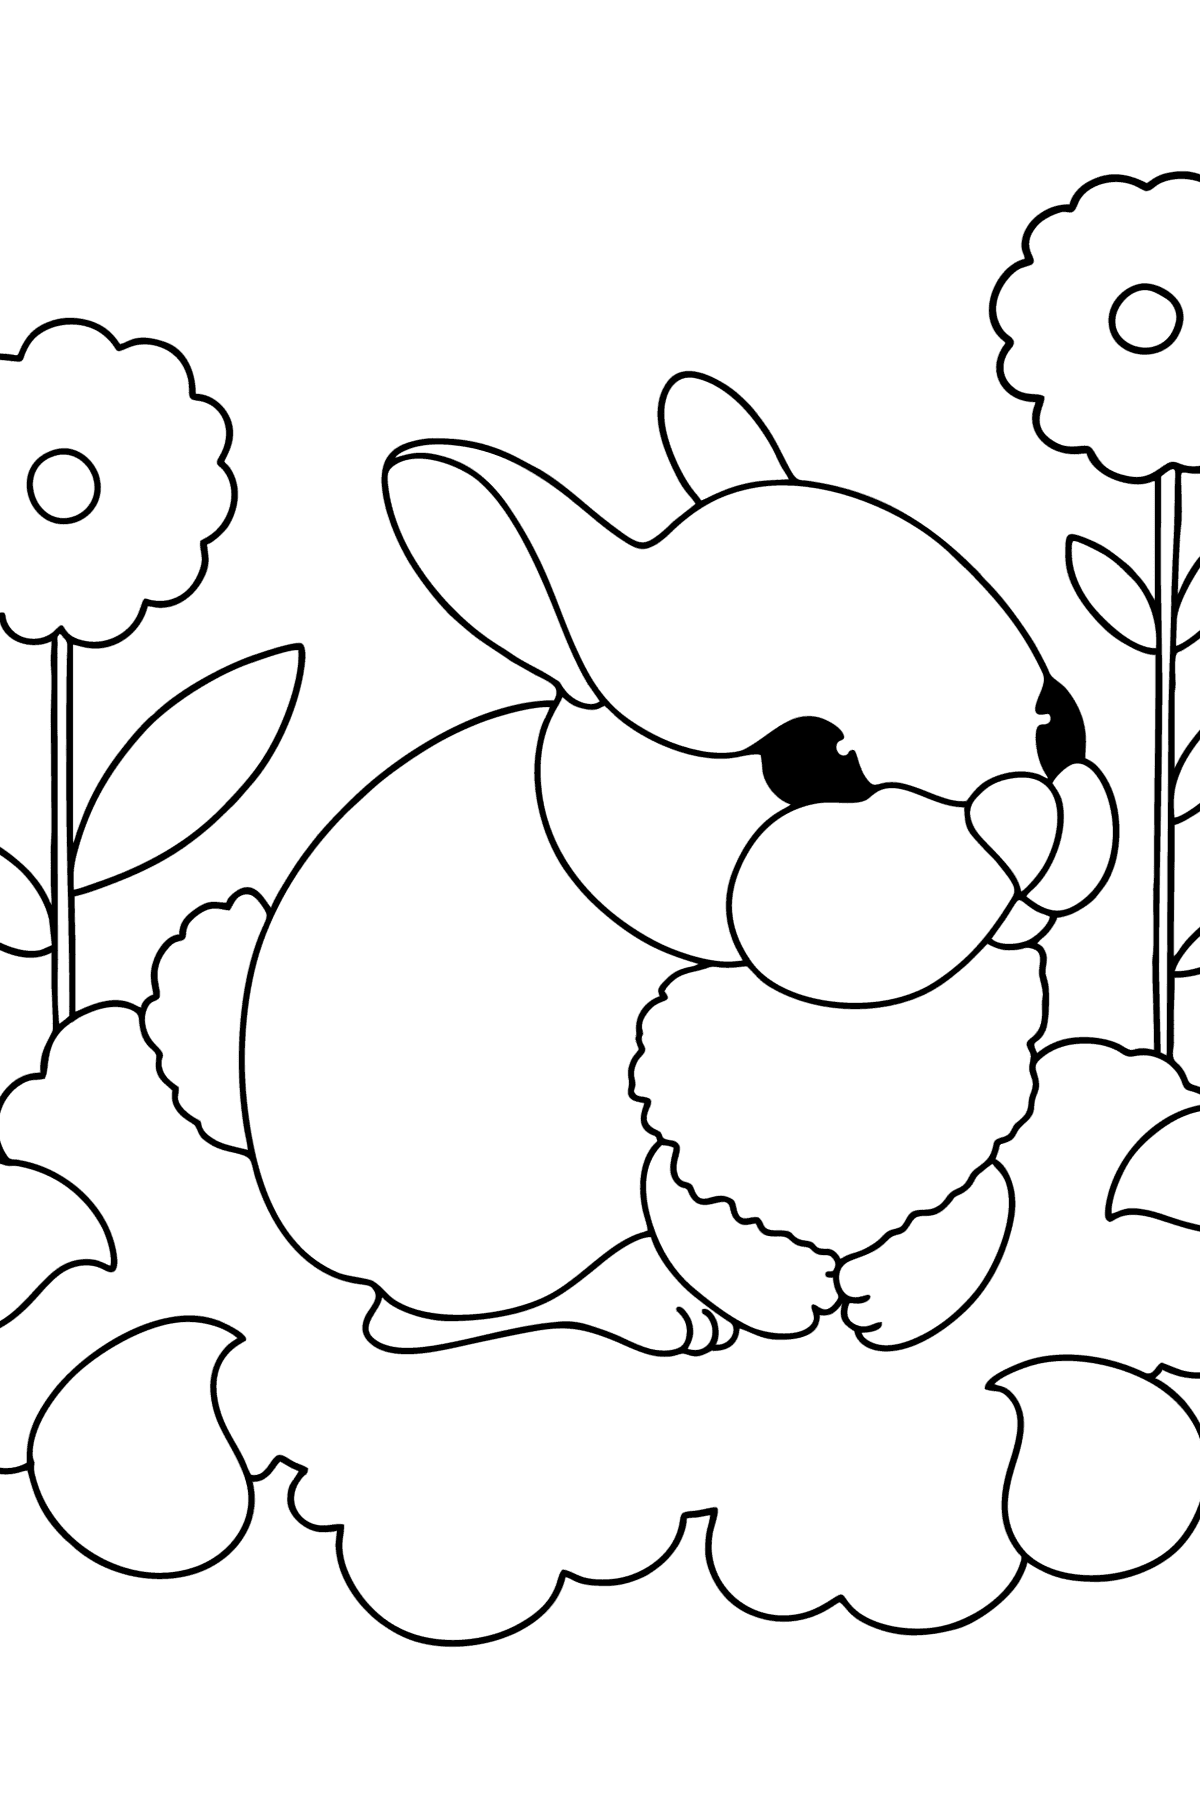 Boyama sayfası bebek tavşan - Boyamalar çocuklar için